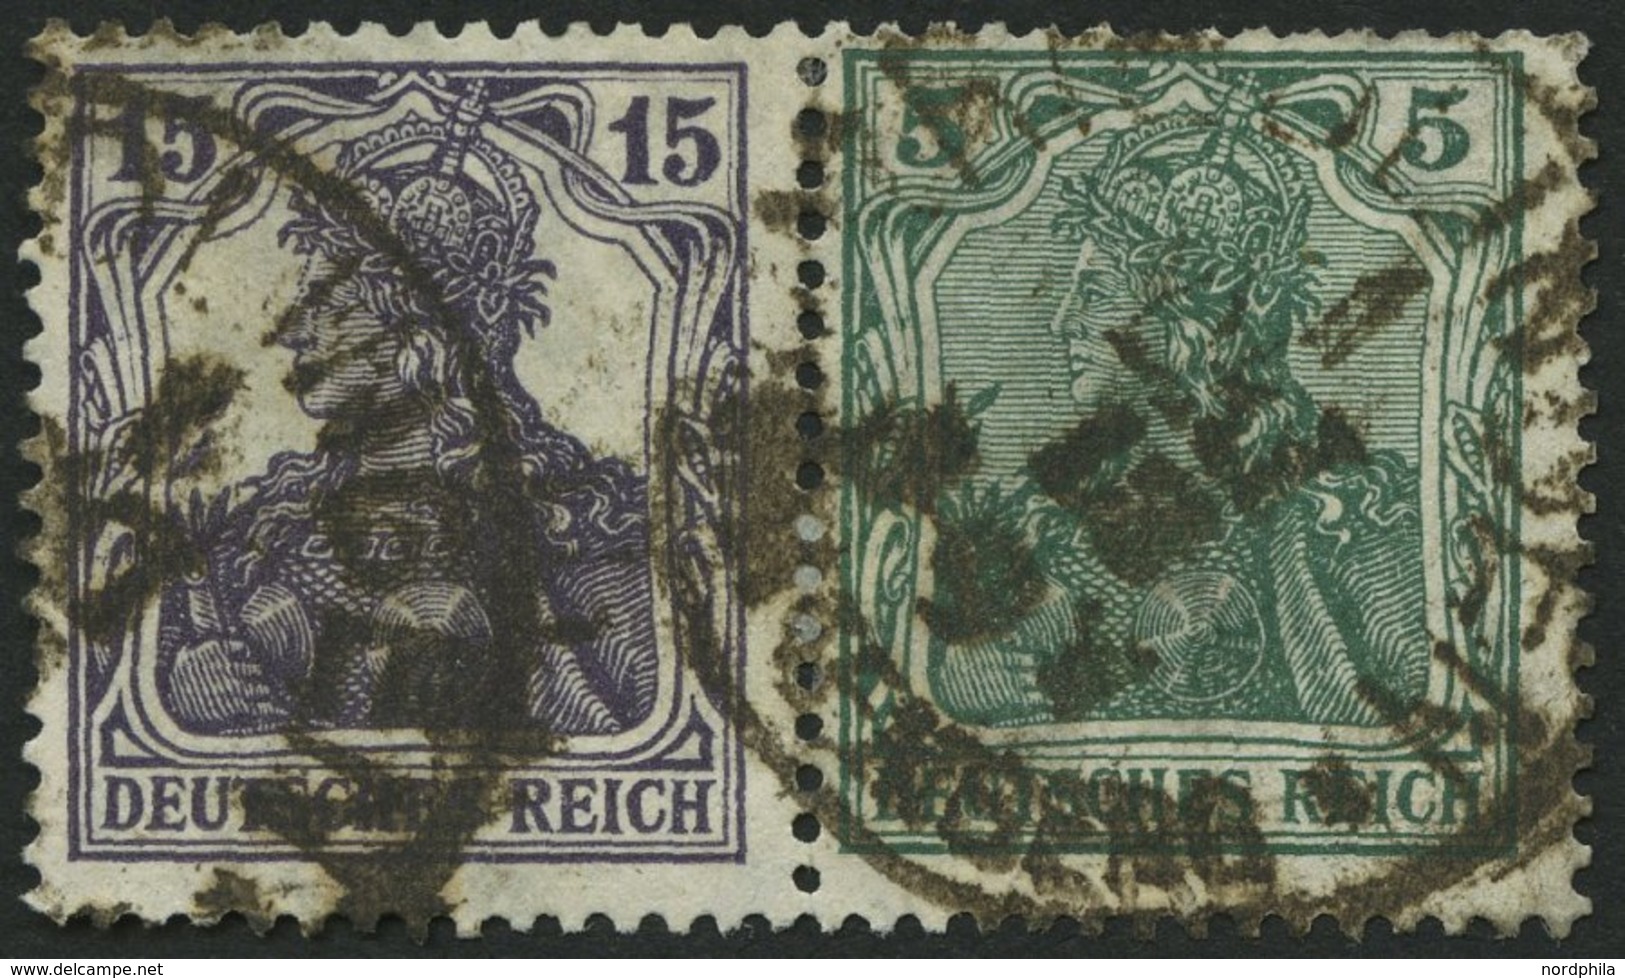 ZUSAMMENDRUCKE W 9aa O, 1917, Germania 15 + 5, Heftchenzähnung, Feinst, Mi. 400.- - Zusammendrucke